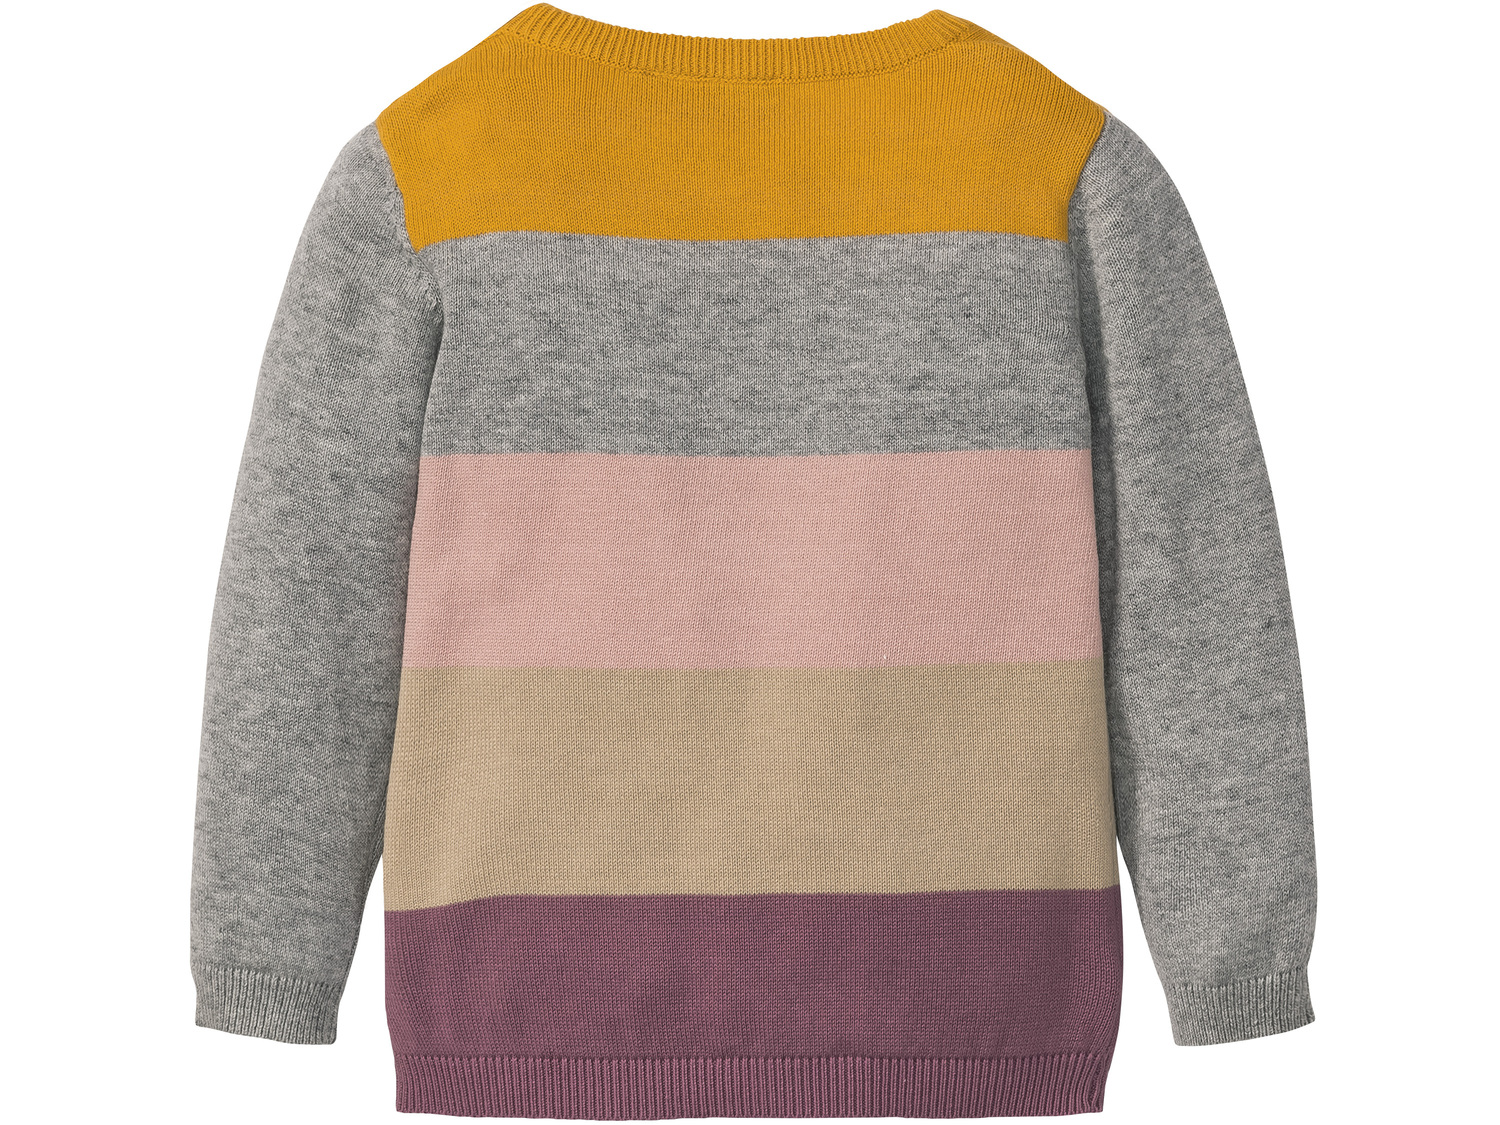 Sweter Lupilu, cena 21,99 &#8364; 
- 100% bawełny
- rozmiary: 86-116
- rozmiar ...